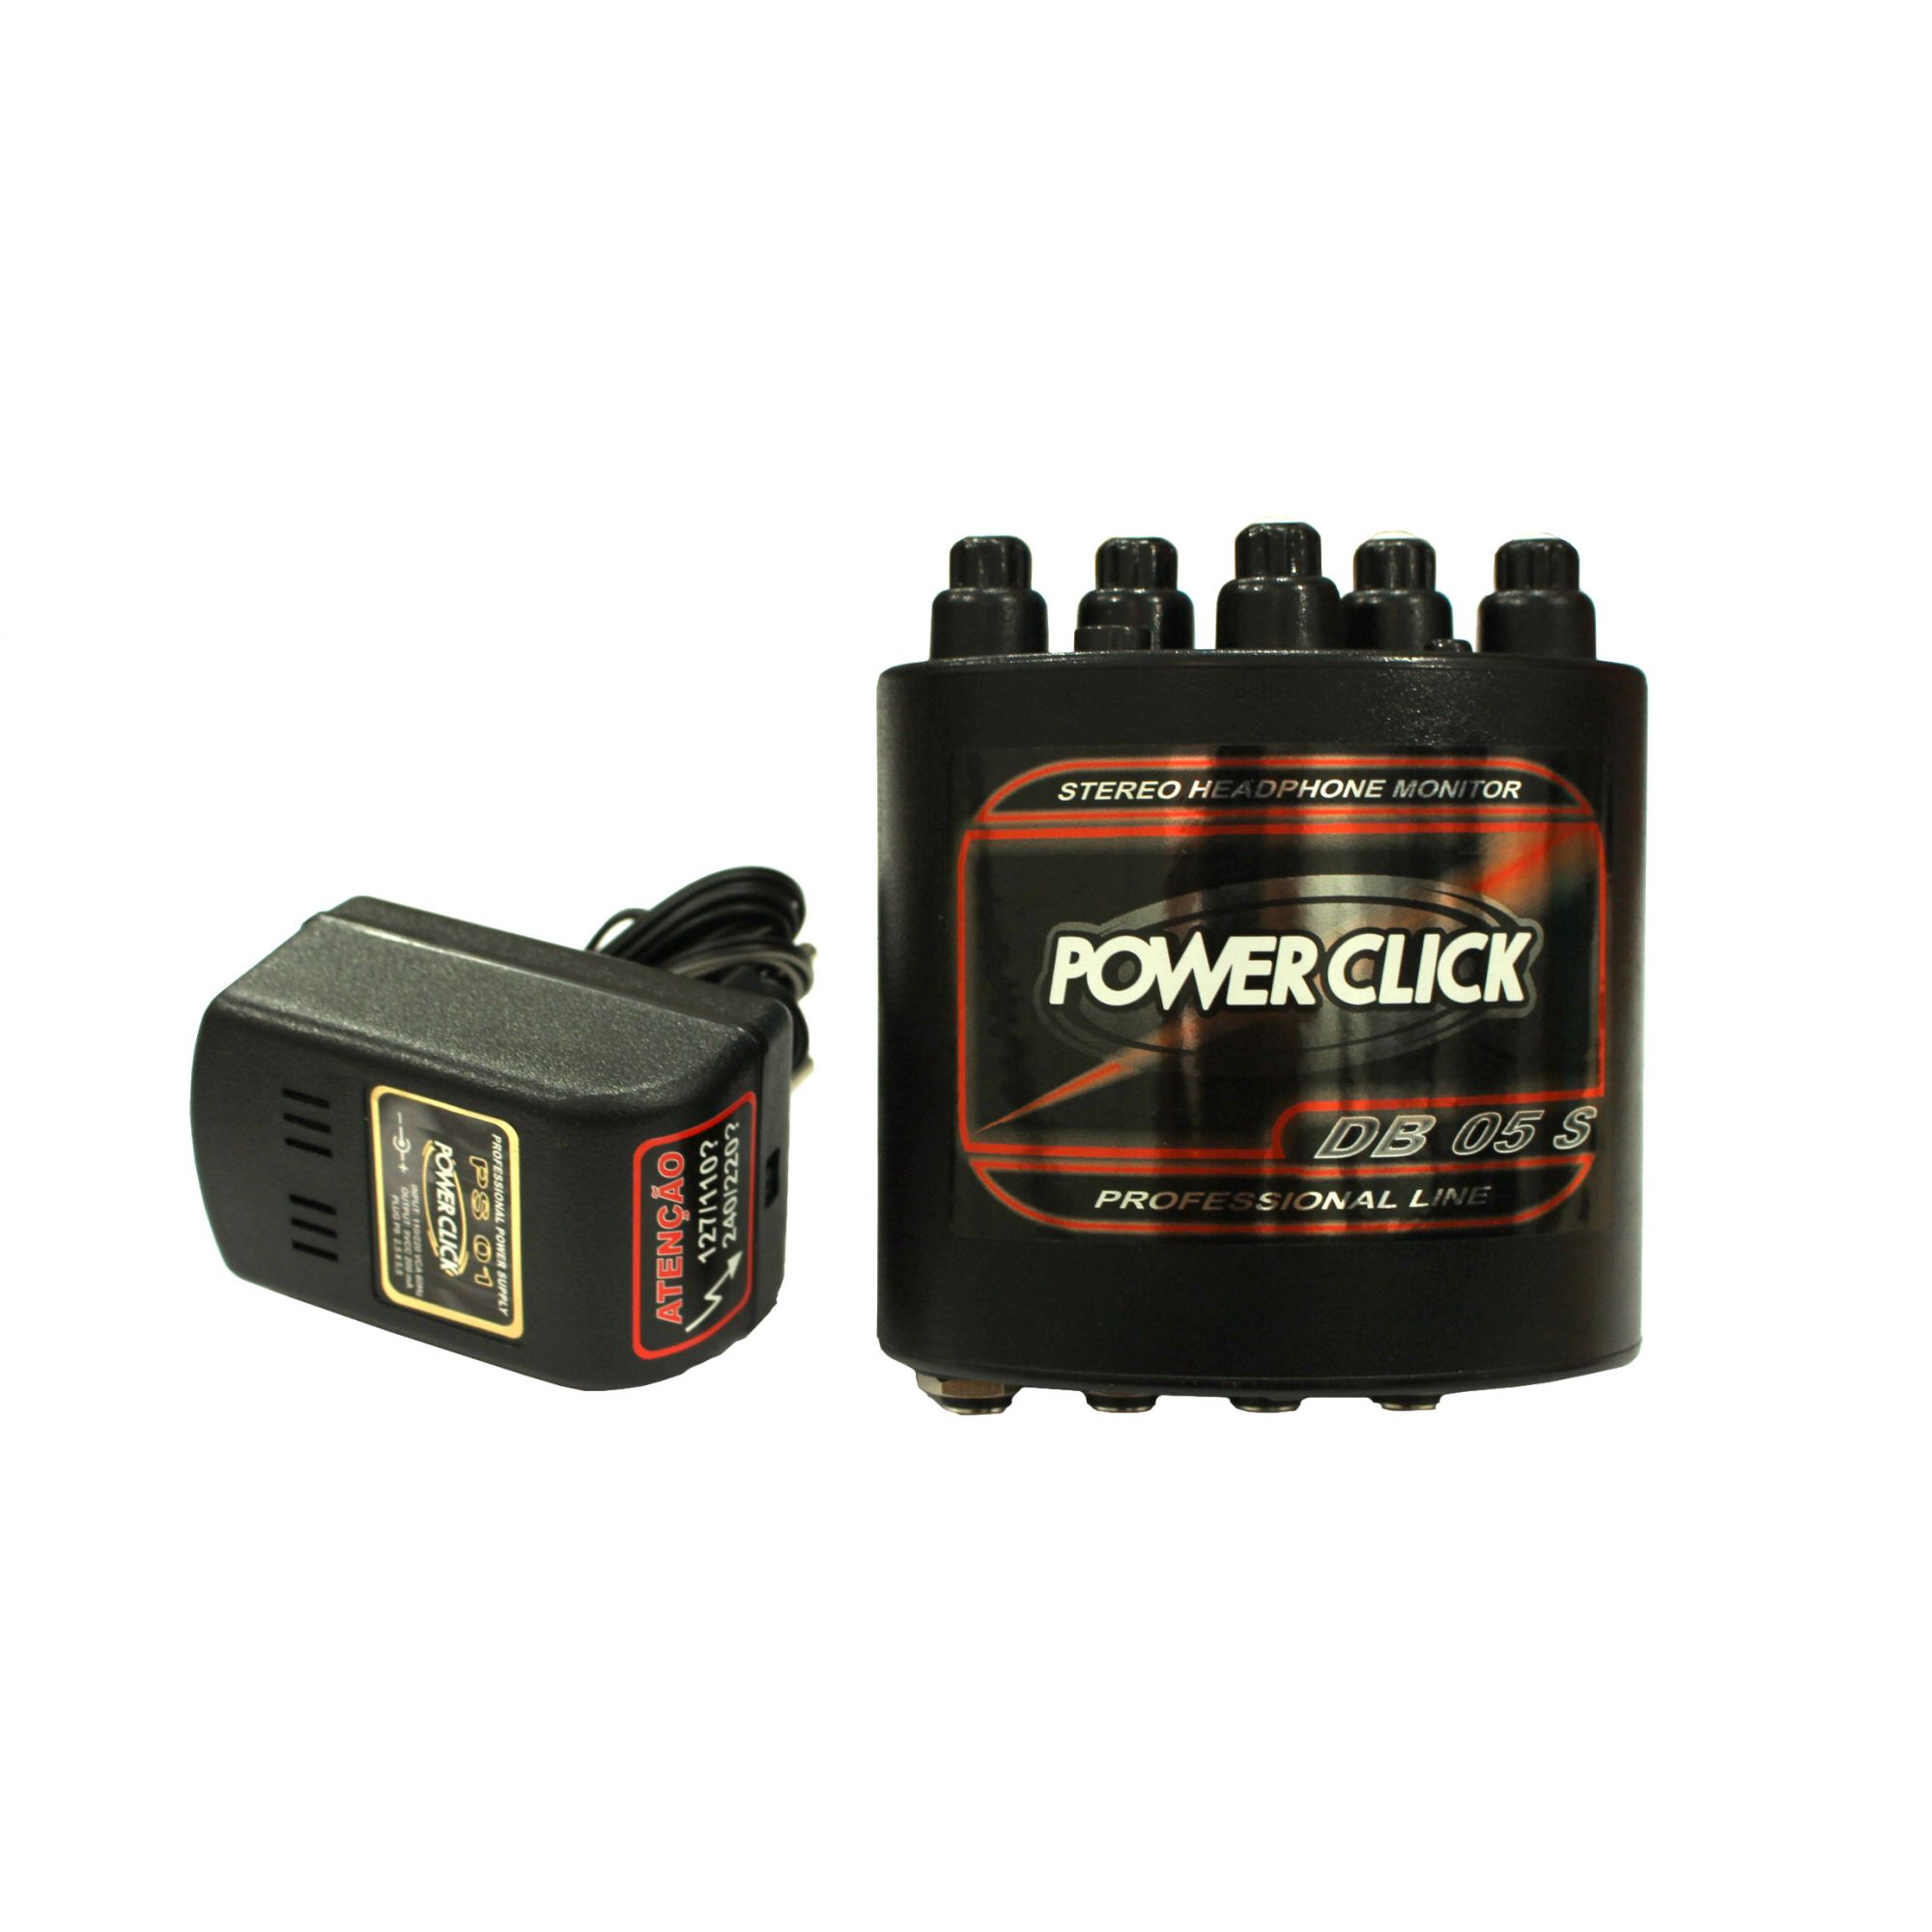 Amplificador de fone e mixer de 2 canais estéreo | Bateria ou Fonte já inclusa | Power Click | DB05S